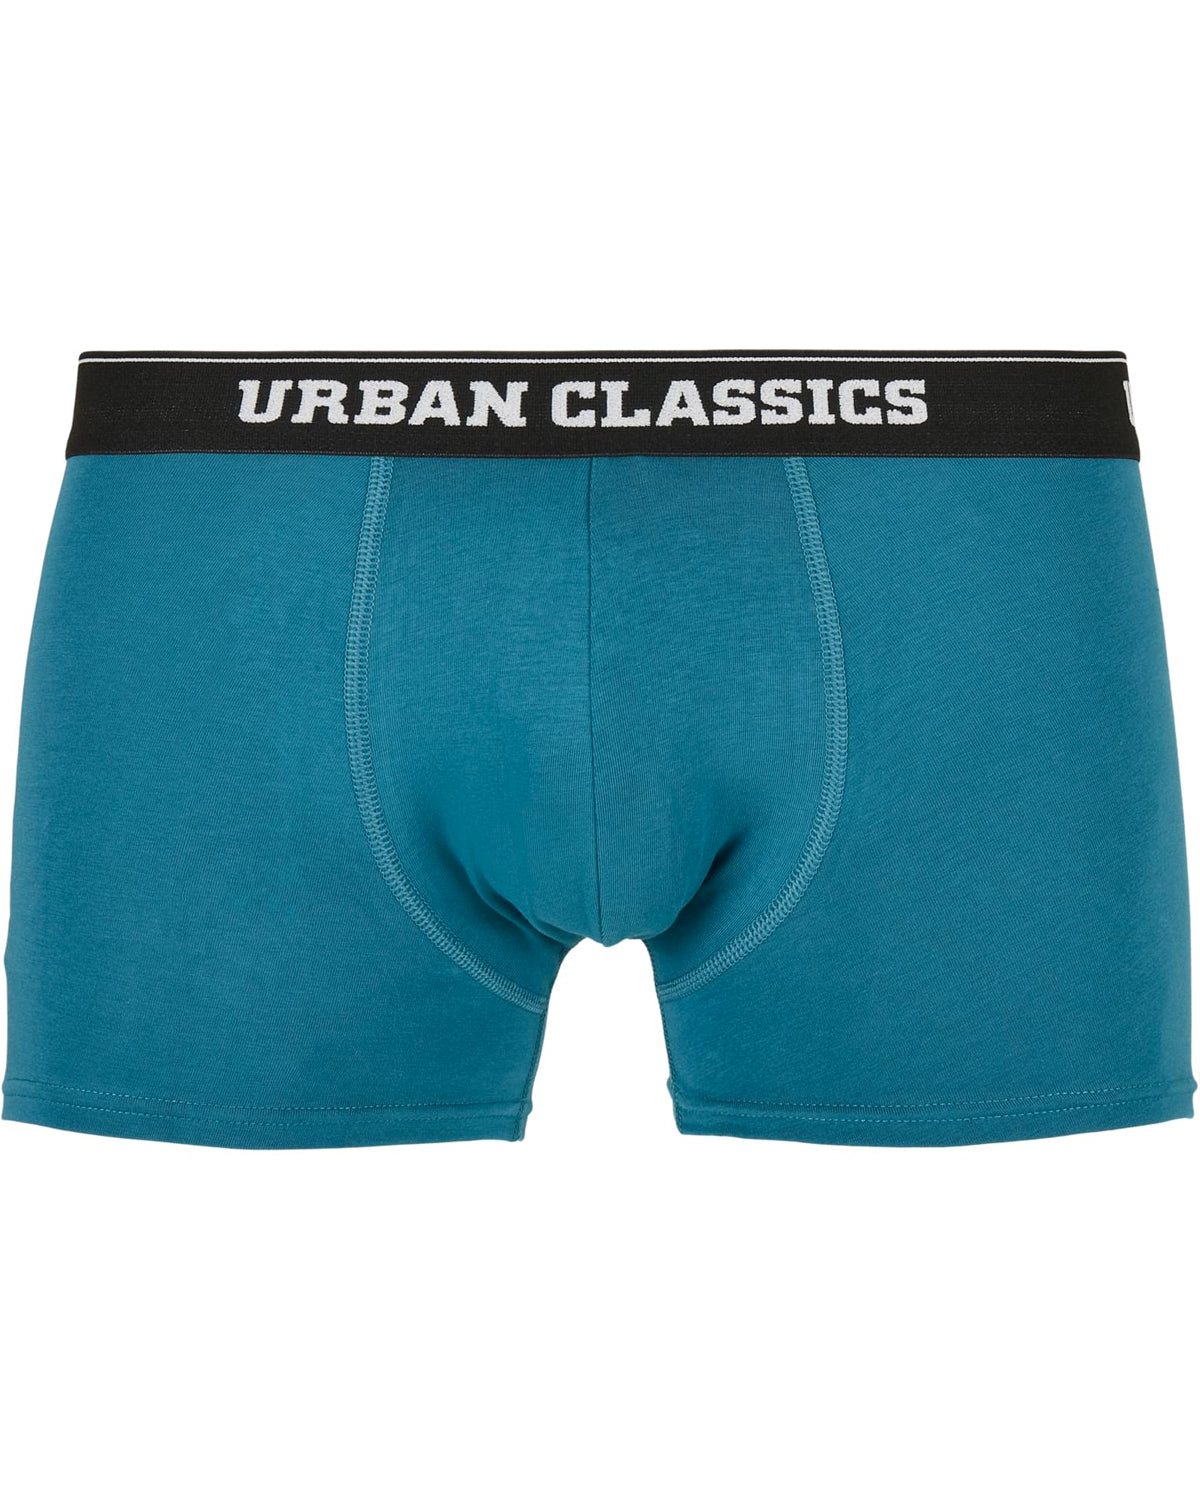 Urban Classics Urban bokserit 3-pack - Kuvio/Musta/Sininen